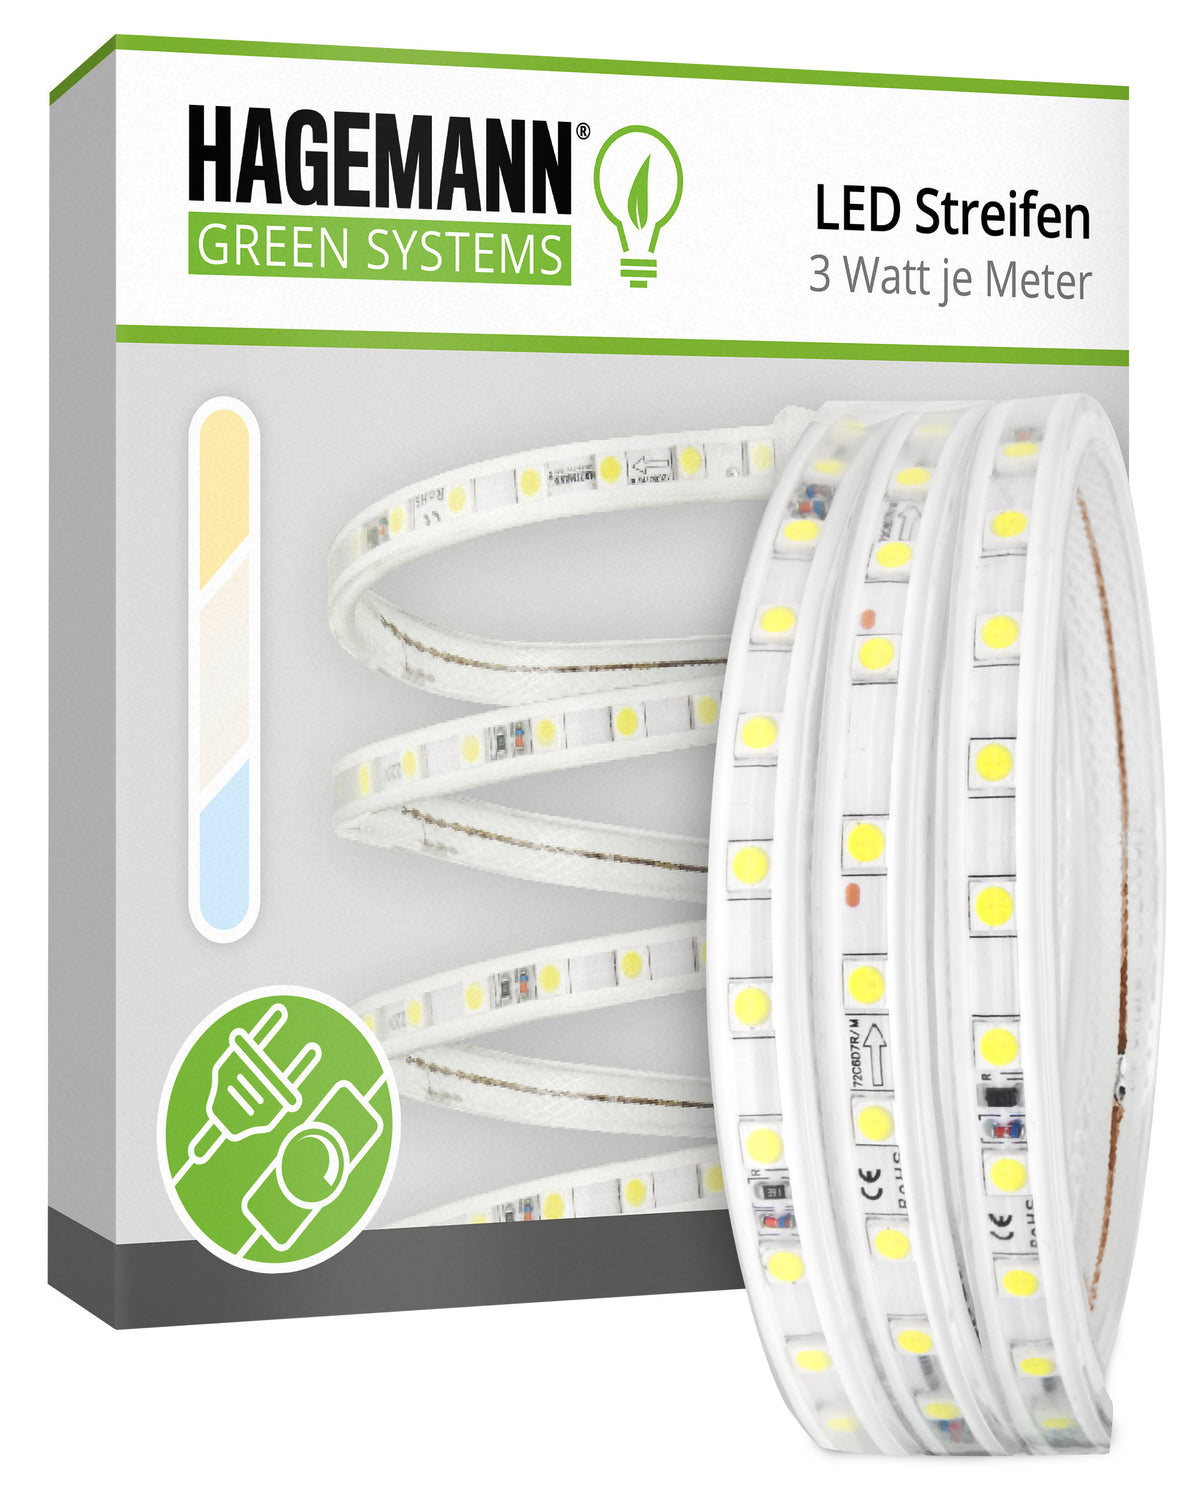 https://hagemann-licht.de/cdn/shop/products/Hagemannn-LED-Streifen-Hauptbild-Dimmbar_1200x1500.jpg?v=1639059581